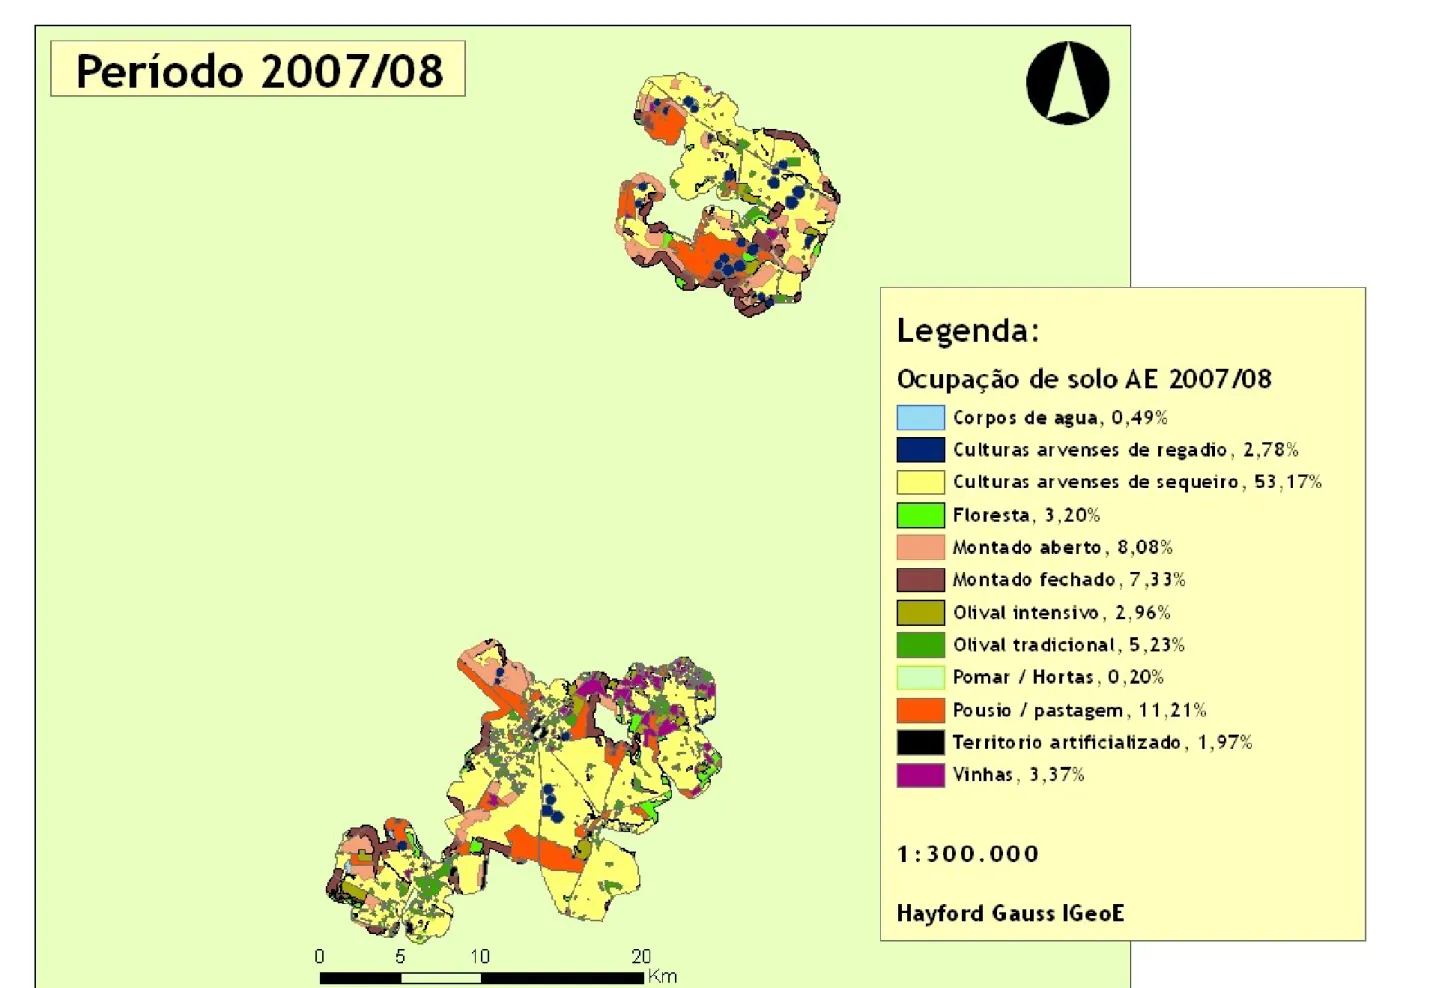 Figura 3 – Carta da ocupação de solo para o período 2007/08 da área de estudo com classes e percentagens de uso do solo